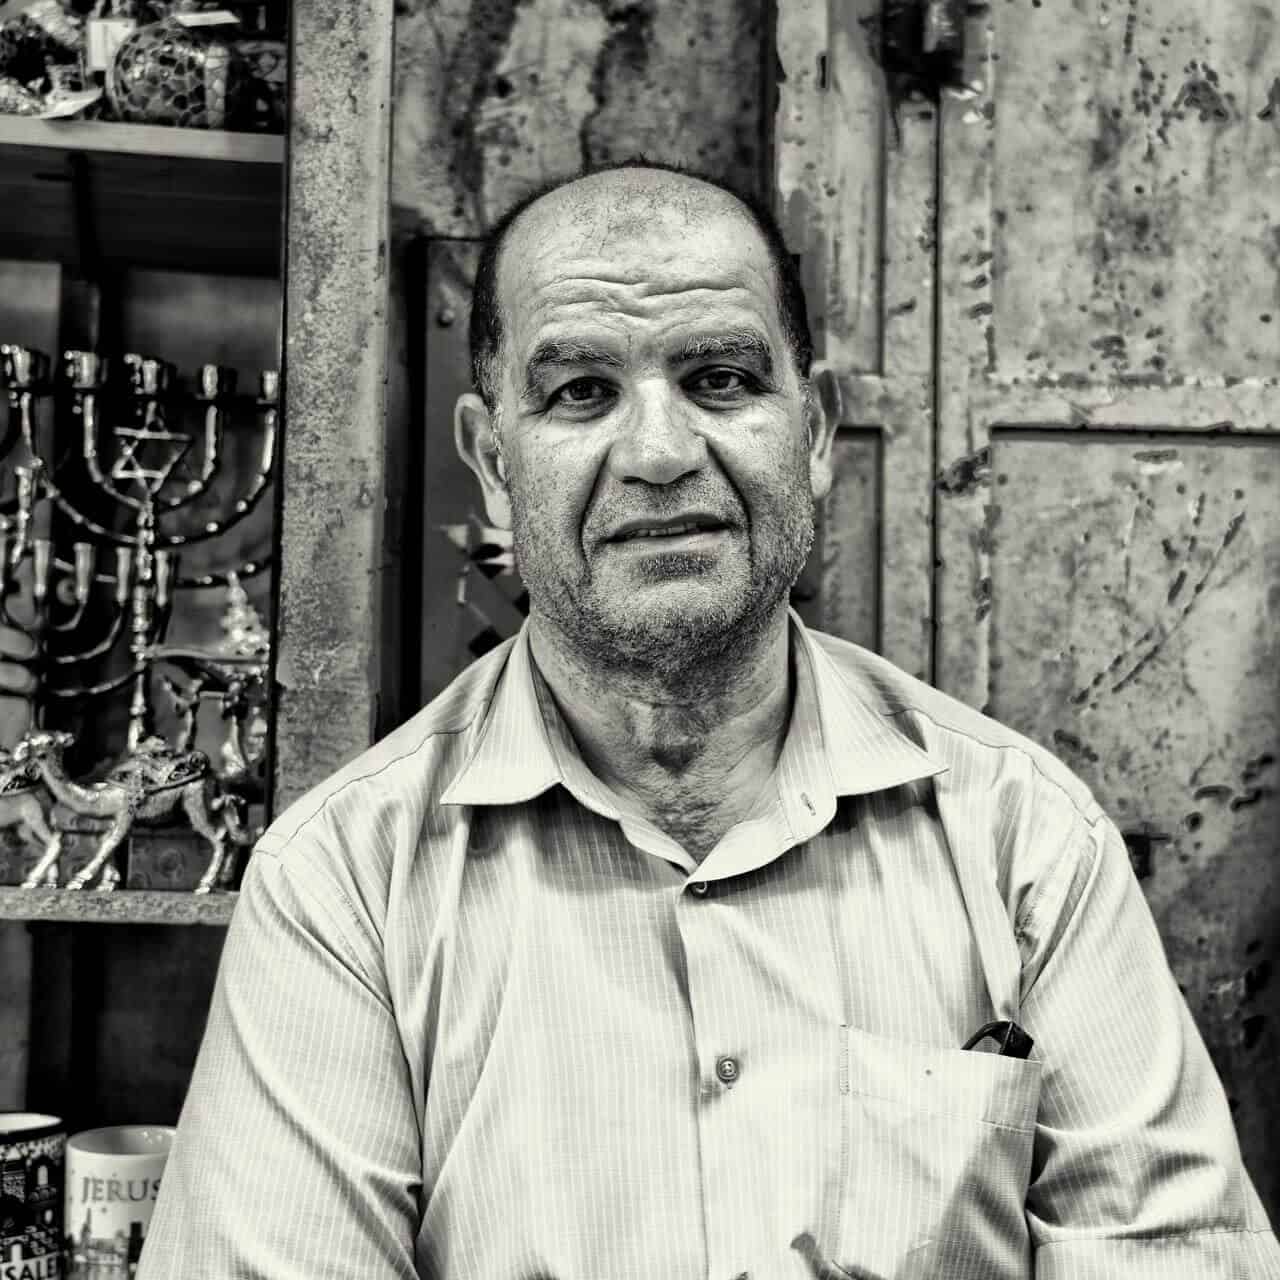 Faces of Jerusalem Photography